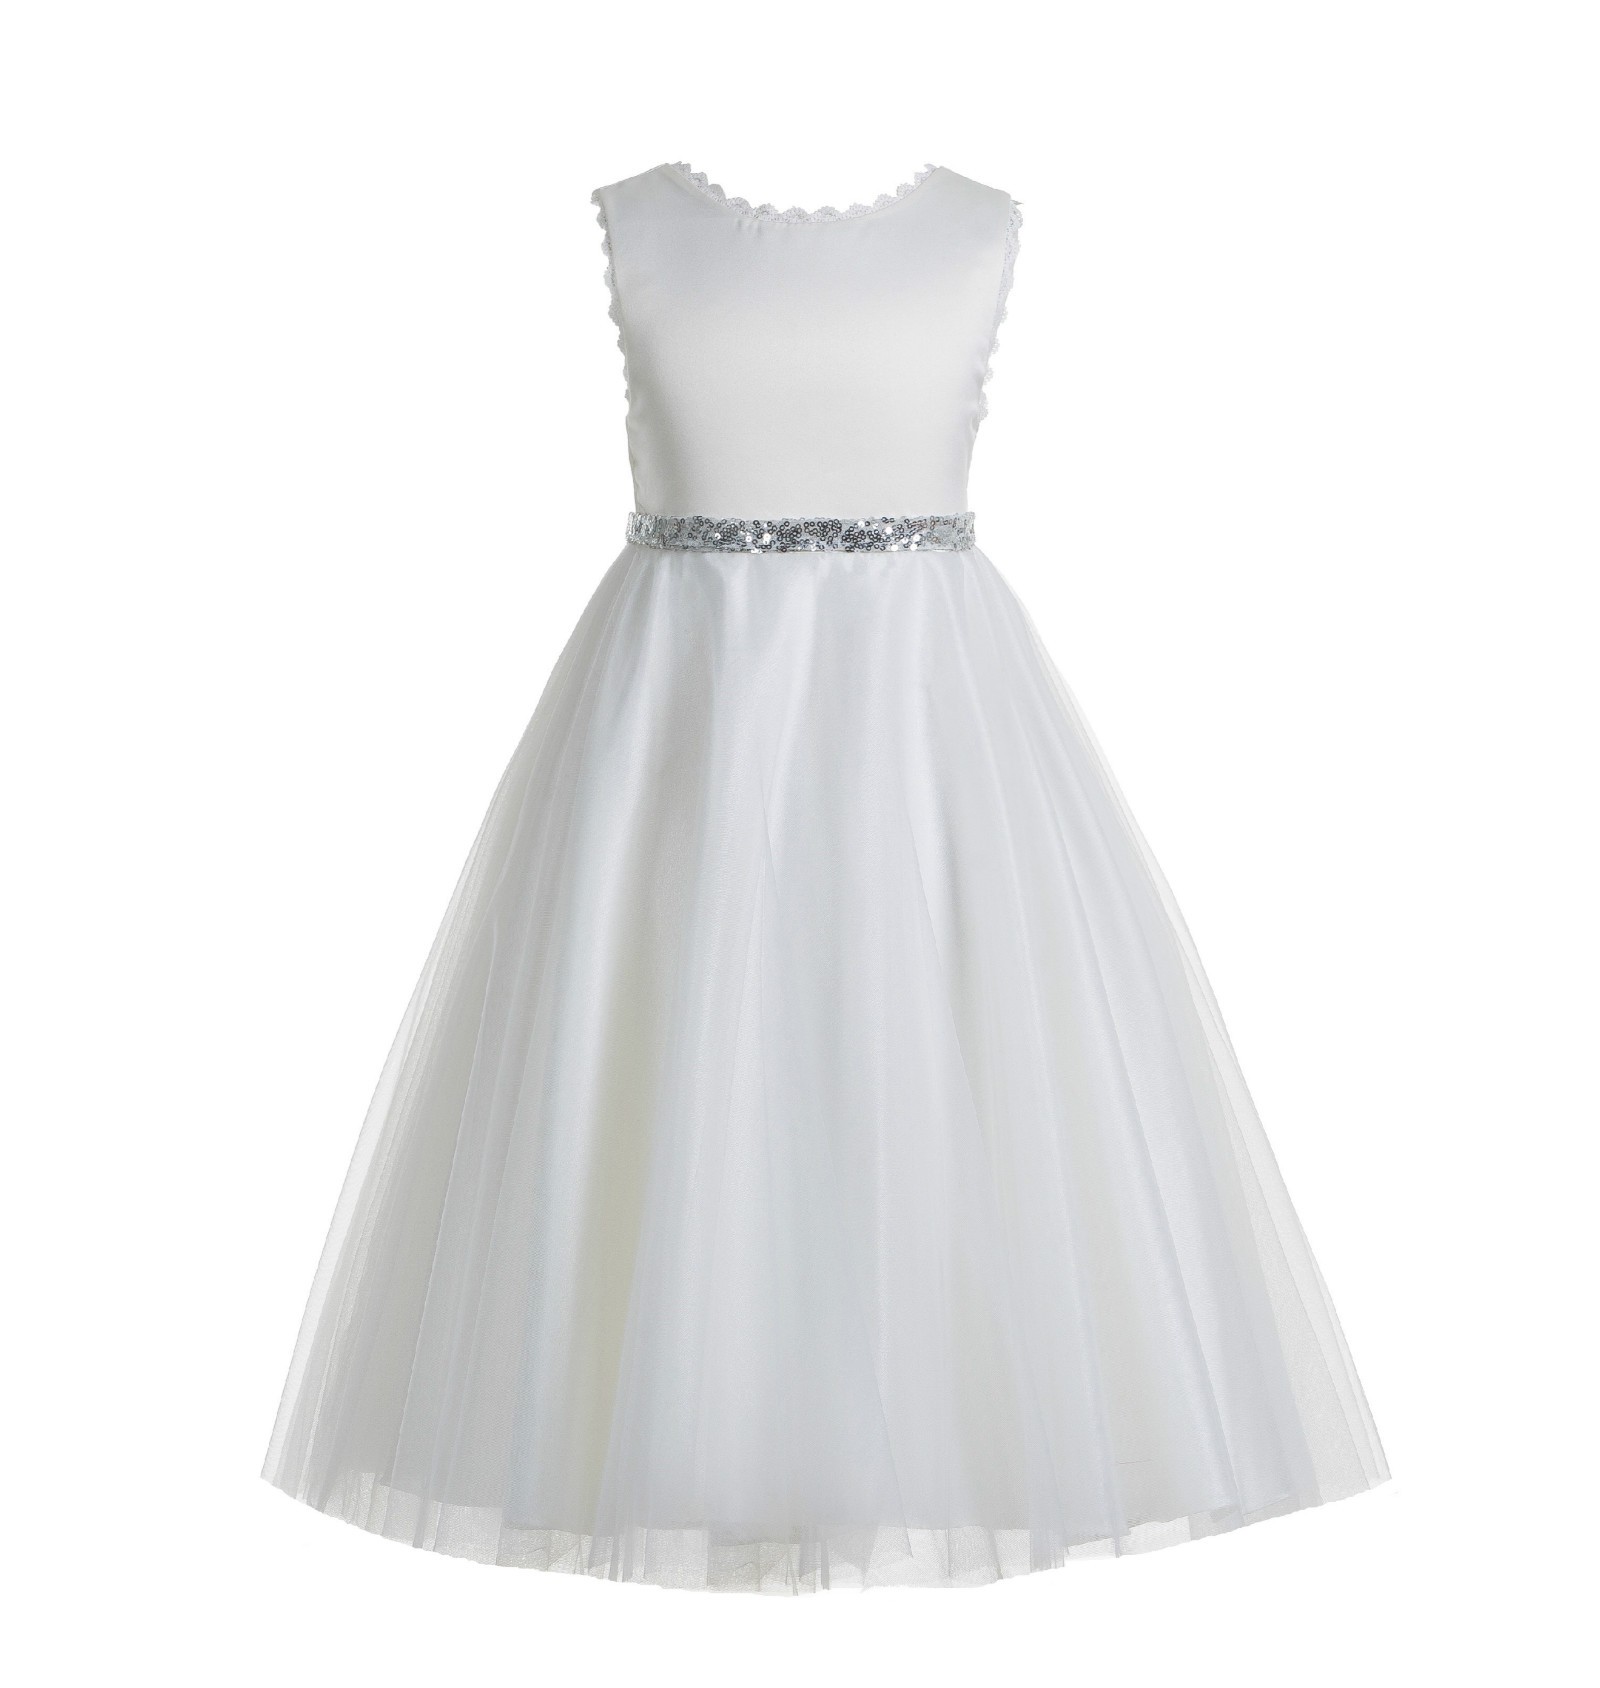 White / Silver V-Back Lace Edge Flower Girl Dress 183